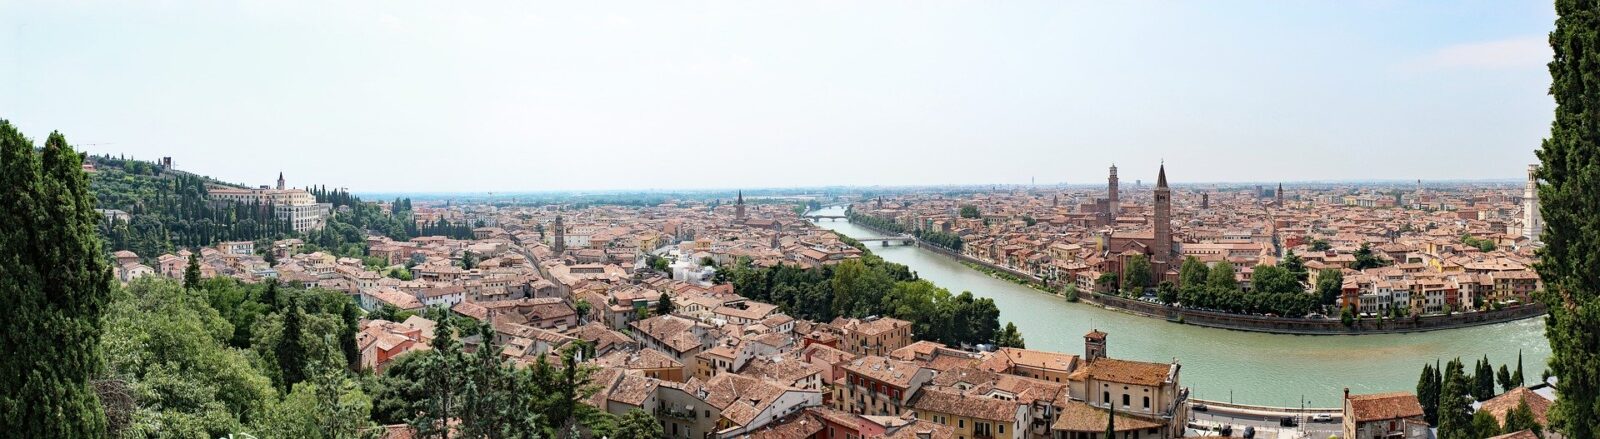 Cosa fare e cosa vedere a Verona in un giorno